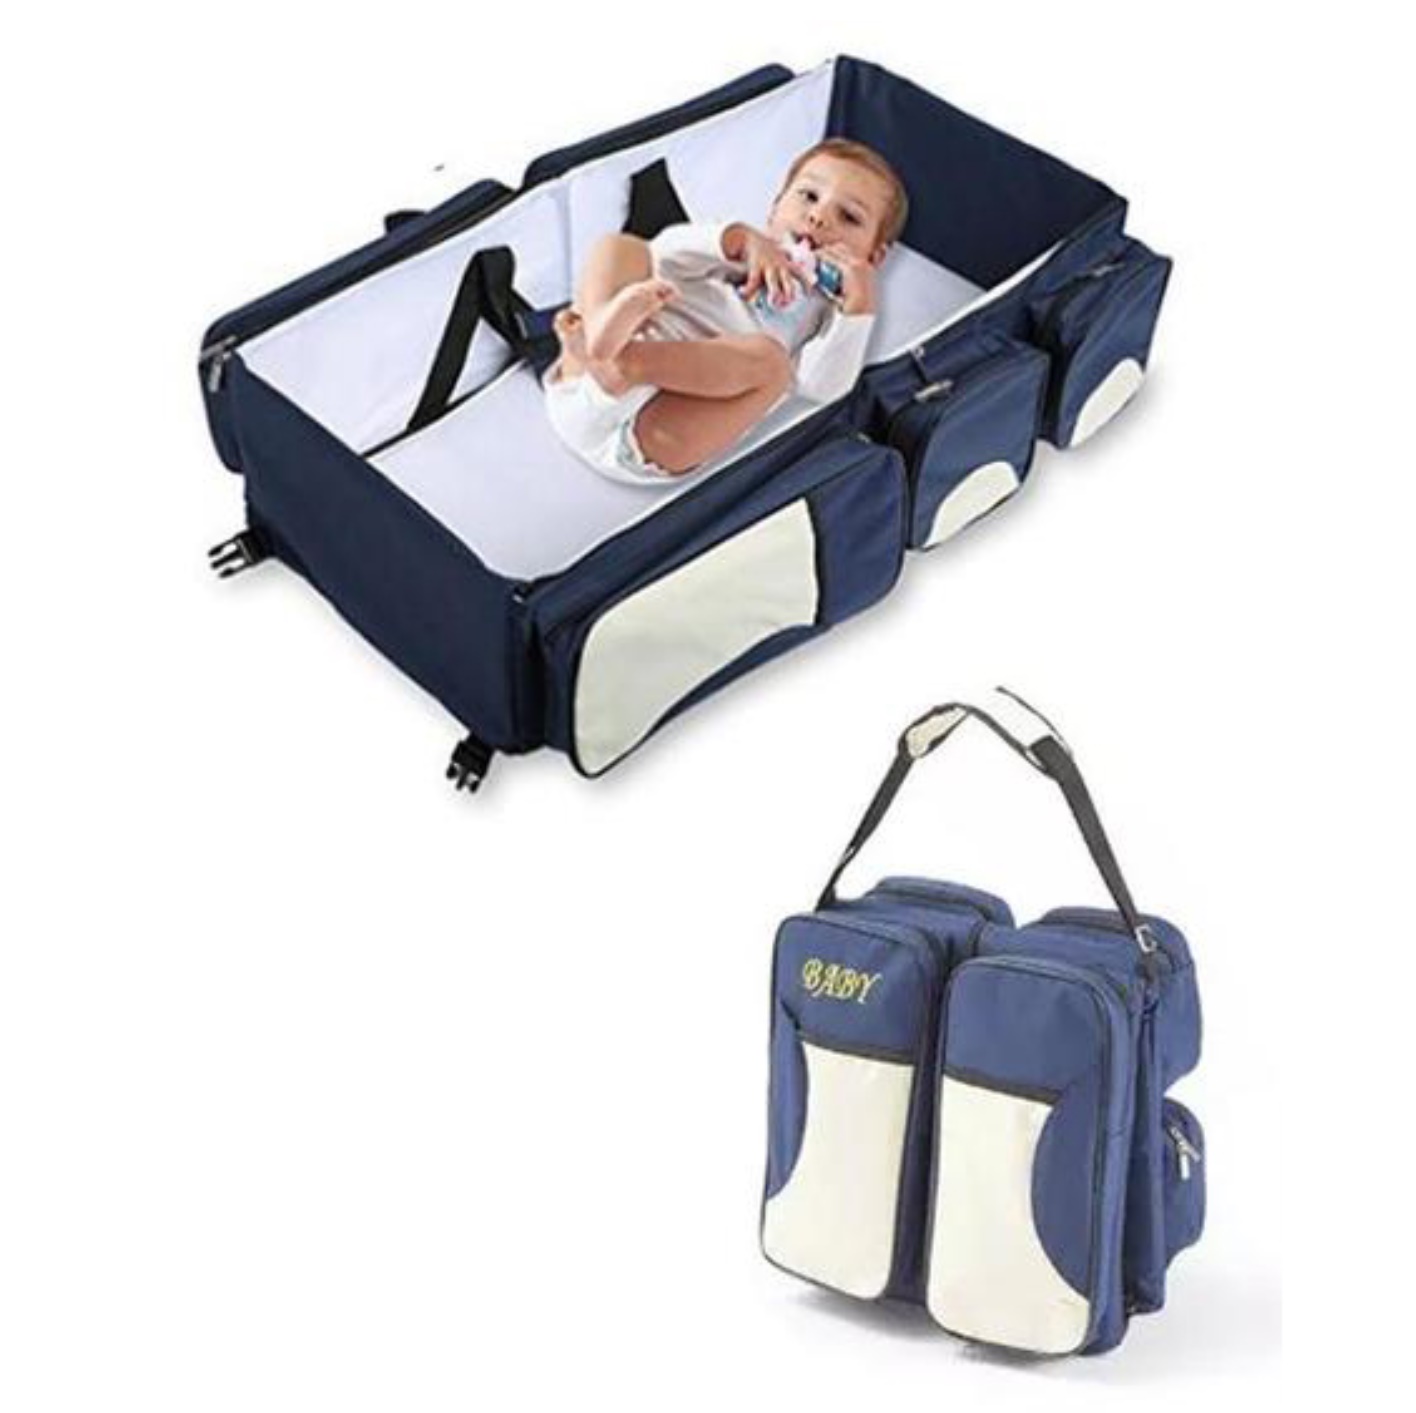 Kit de calatorie pentru bebelusi - Geanta cu accesorii 3 in 1